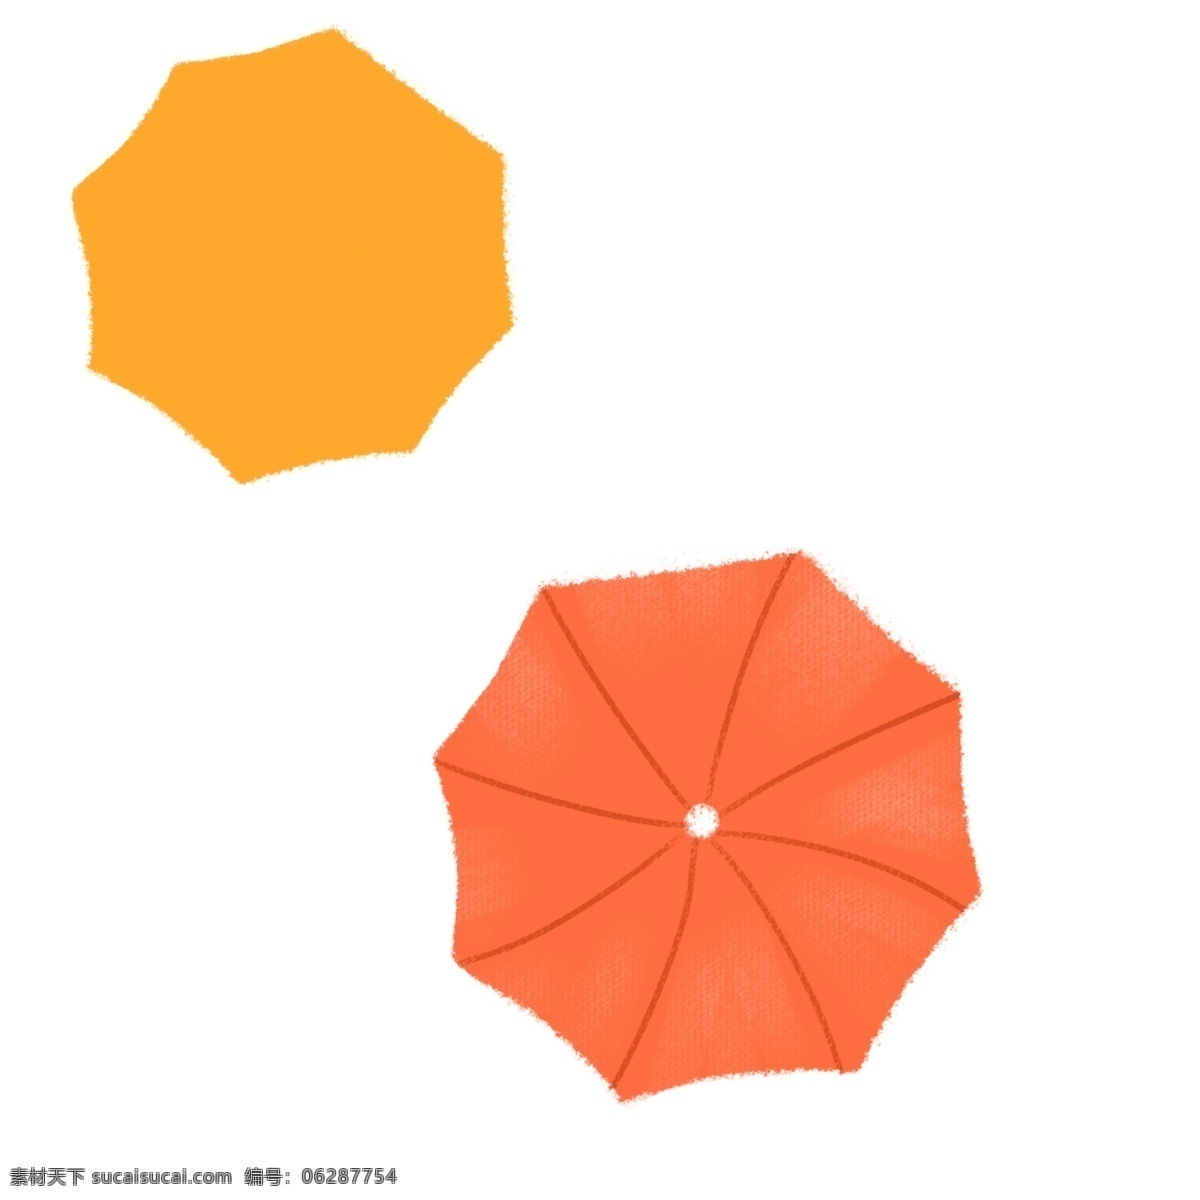 手绘 橙色 黄色 雨伞 元素 雨伞设计 元素设计 装饰图案 彩色元素 卡通元素 可爱元素